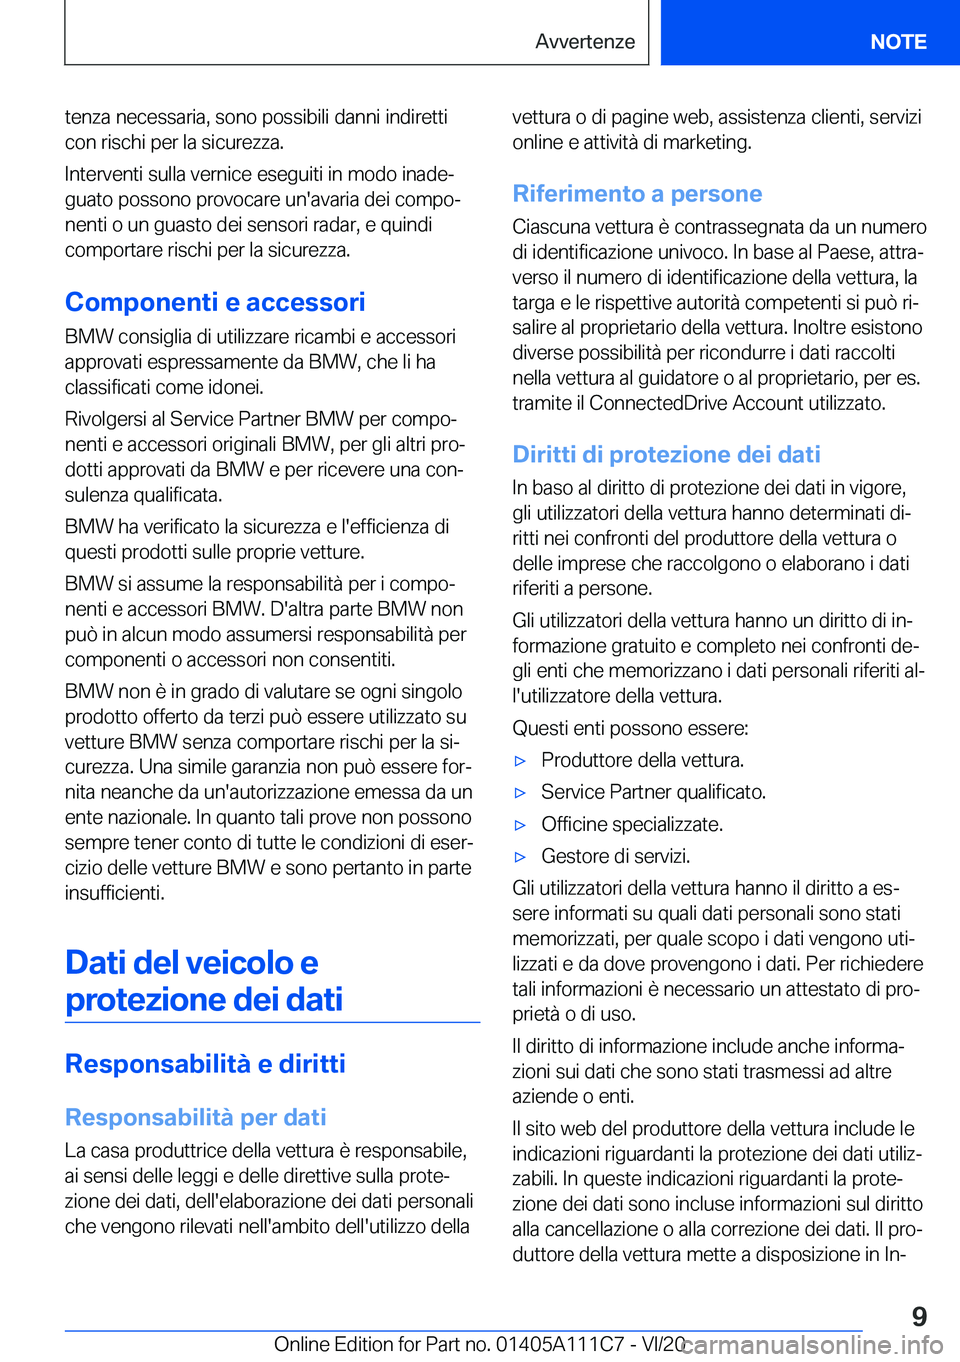 BMW 3 SERIES SEDAN PLUG-IN HYBRID 2021  Libretti Di Uso E manutenzione (in Italian) �t�e�n�z�a��n�e�c�e�s�s�a�r�i�a�,��s�o�n�o��p�o�s�s�i�b�i�l�i��d�a�n�n�i��i�n�d�i�r�e�t�t�i�c�o�n��r�i�s�c�h�i��p�e�r��l�a��s�i�c�u�r�e�z�z�a�.
�I�n�t�e�r�v�e�n�t�i��s�u�l�l�a��v�e�r�n�i�c�